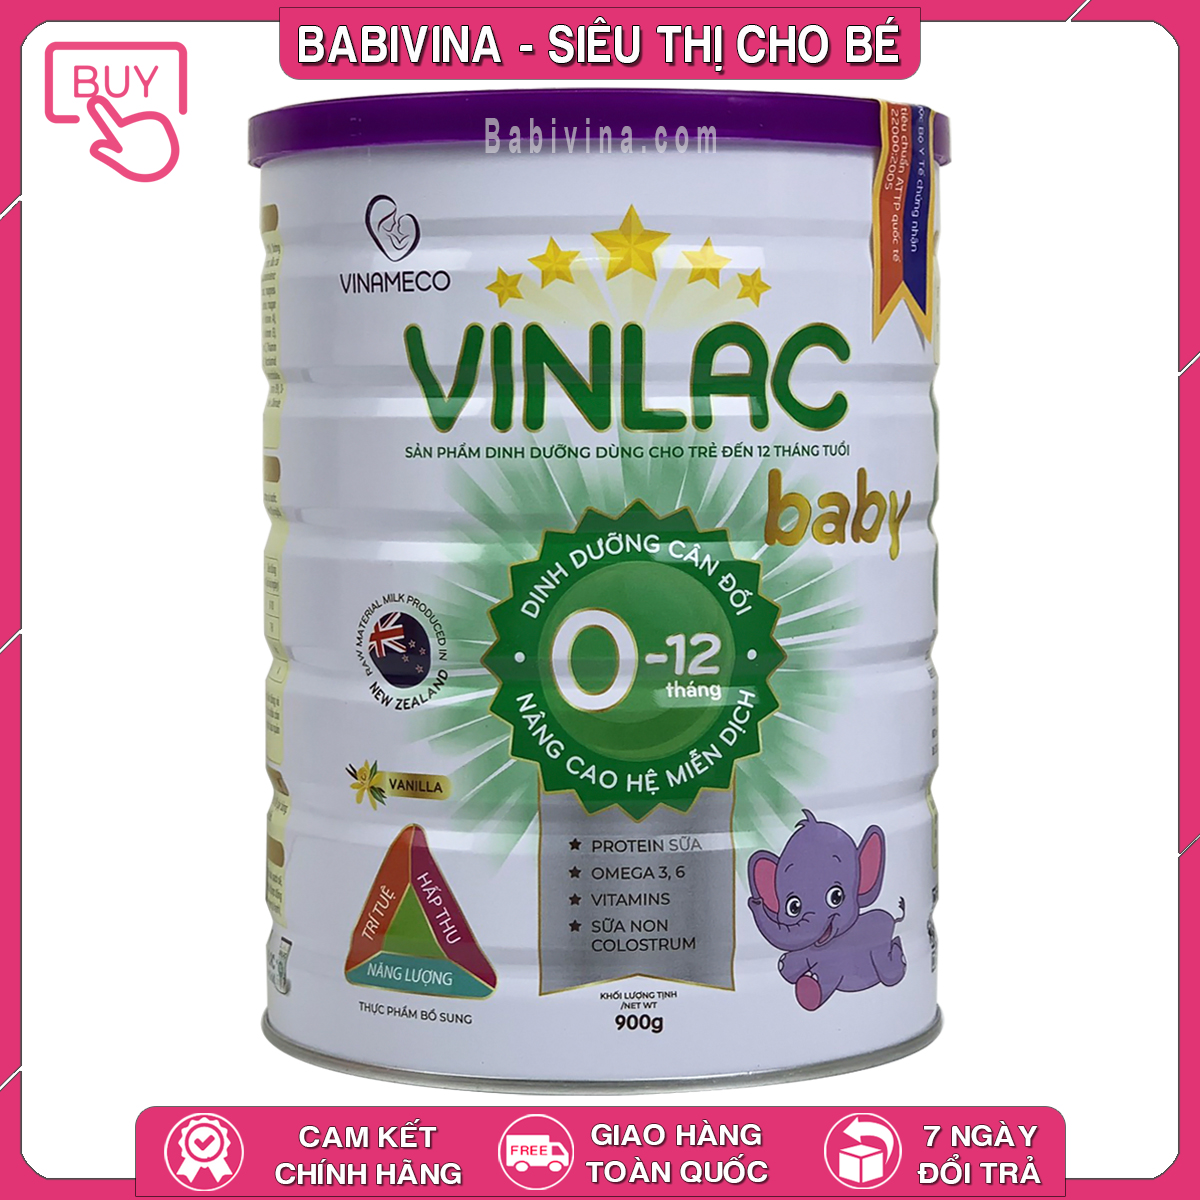 Sữa Vinlac Baby 900g Cho Trẻ Từ 0-12 Tháng Tuổi Mua Vinlac Chính Hãng